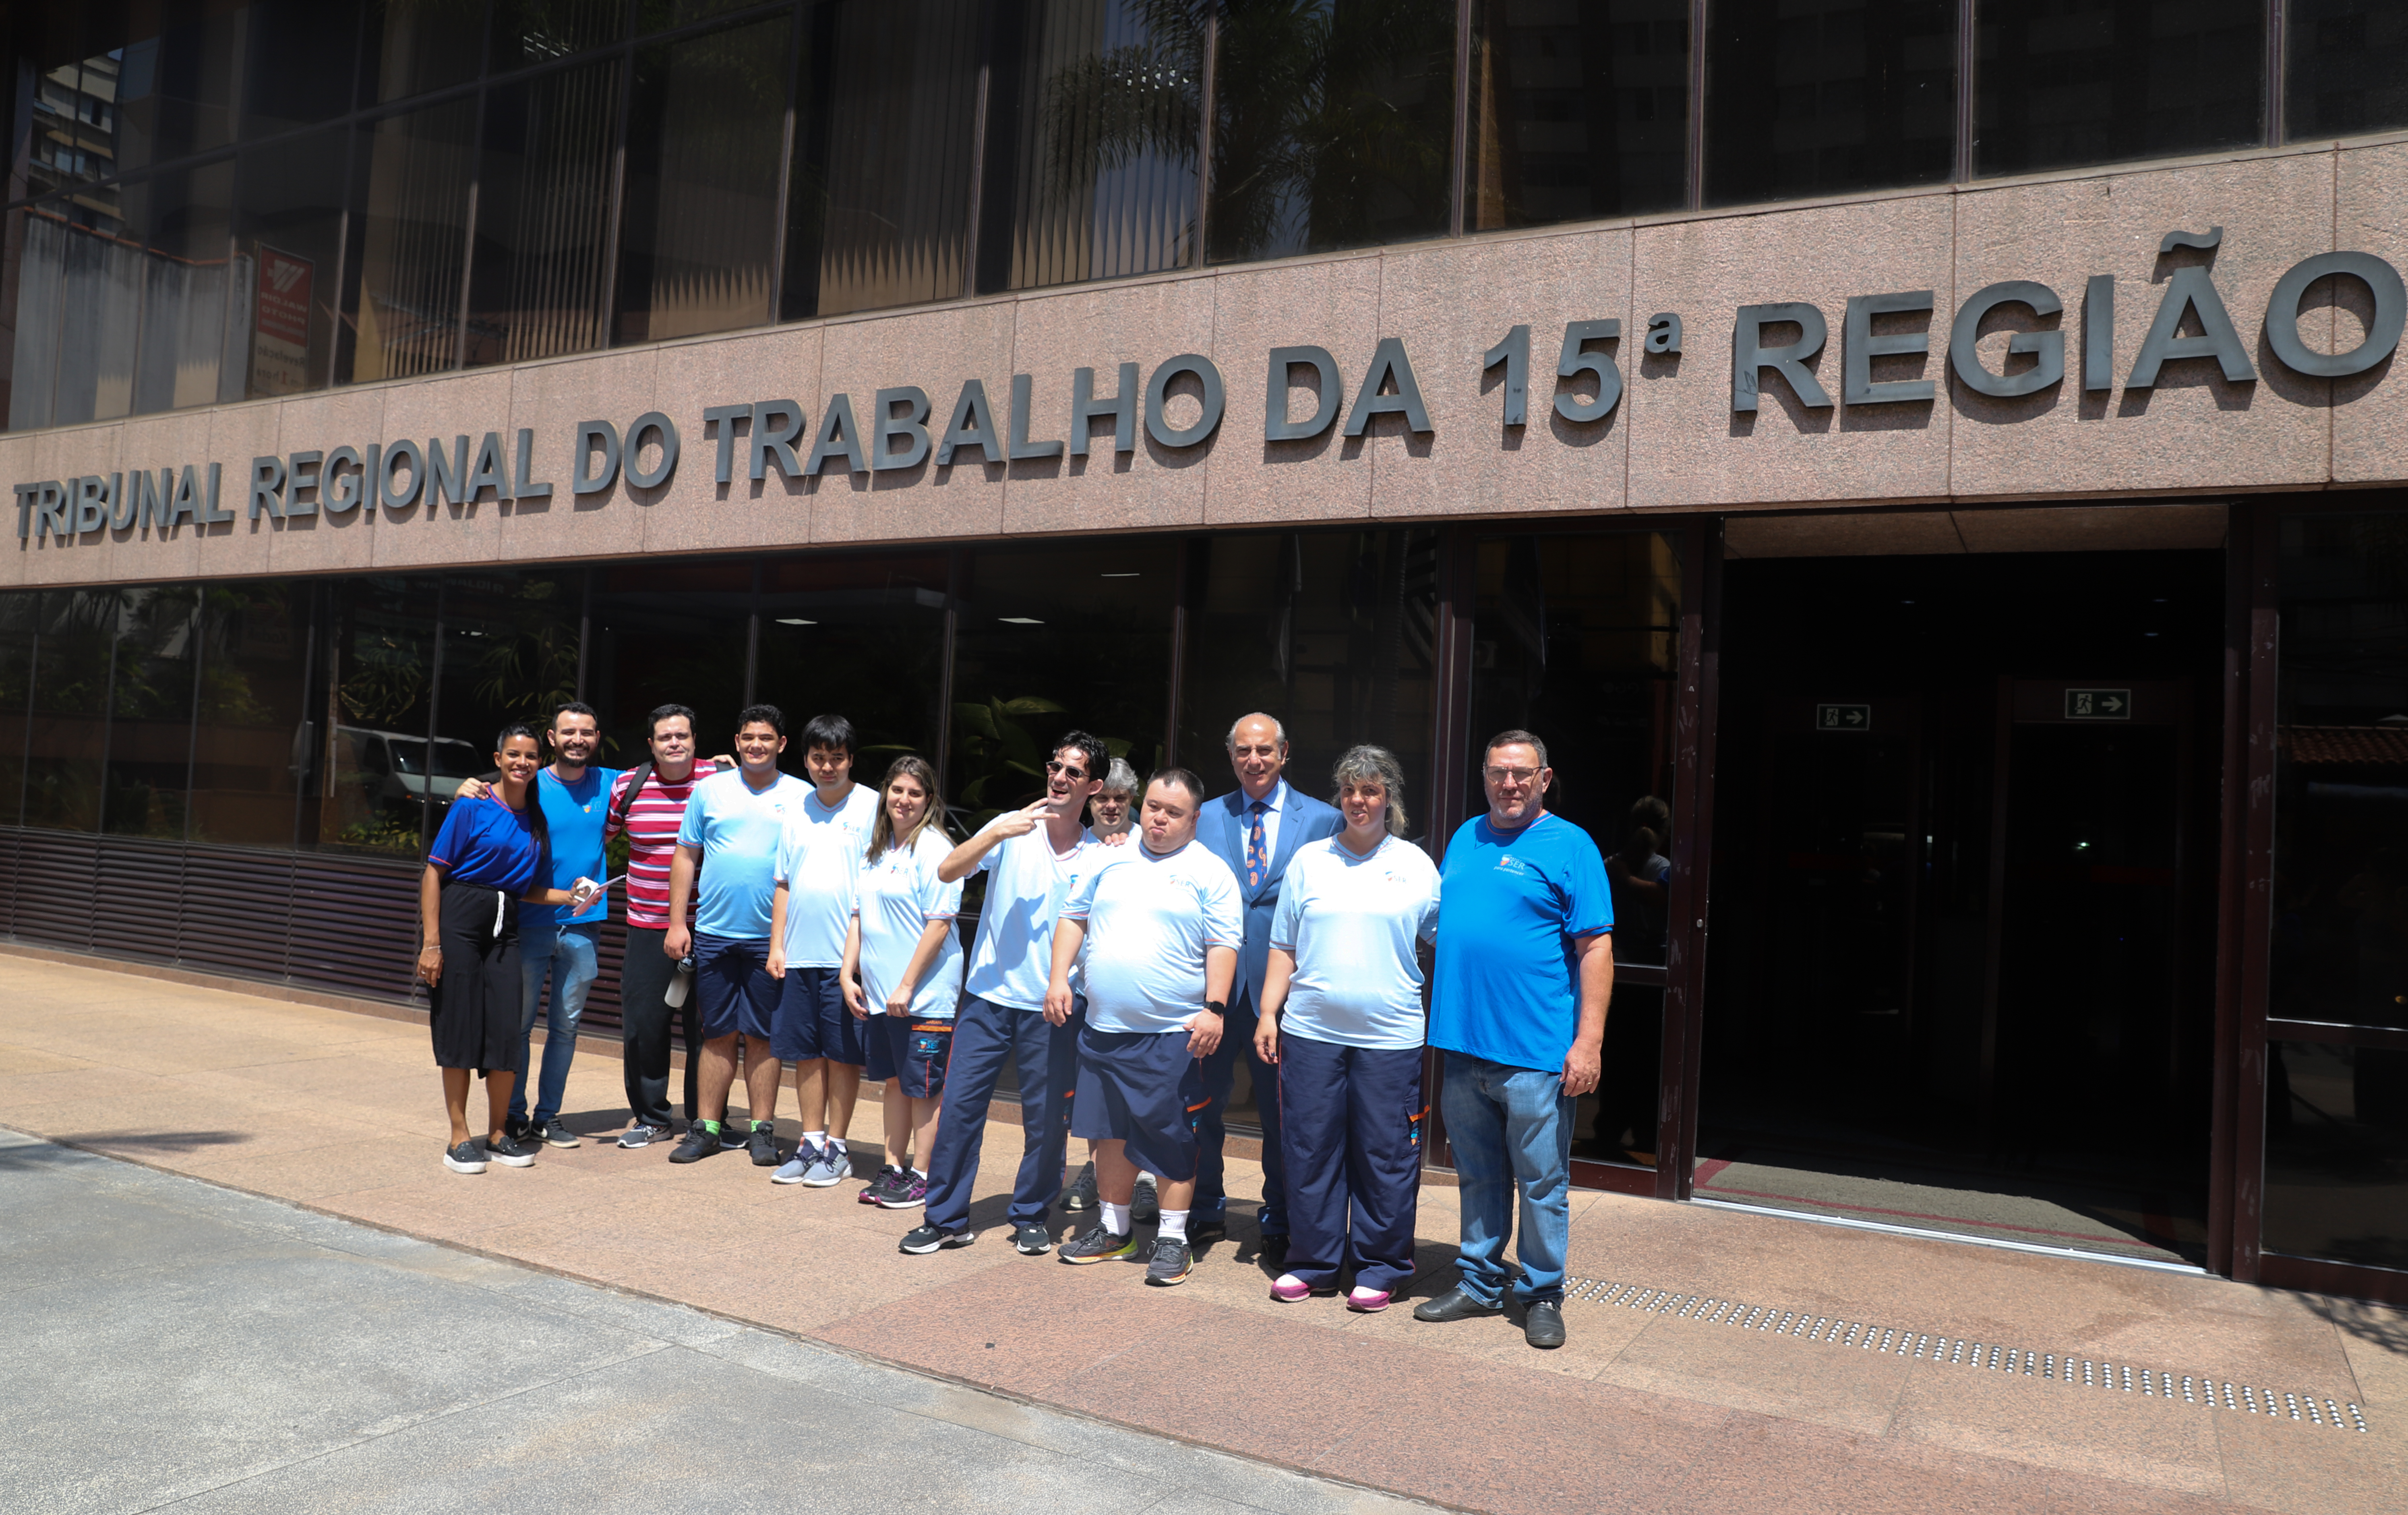 Doze pessoas em frente a fachada do tribunal, sendo sete alunos uniformizados, acompanhados de professores e do desembargador Fabio Aguiar